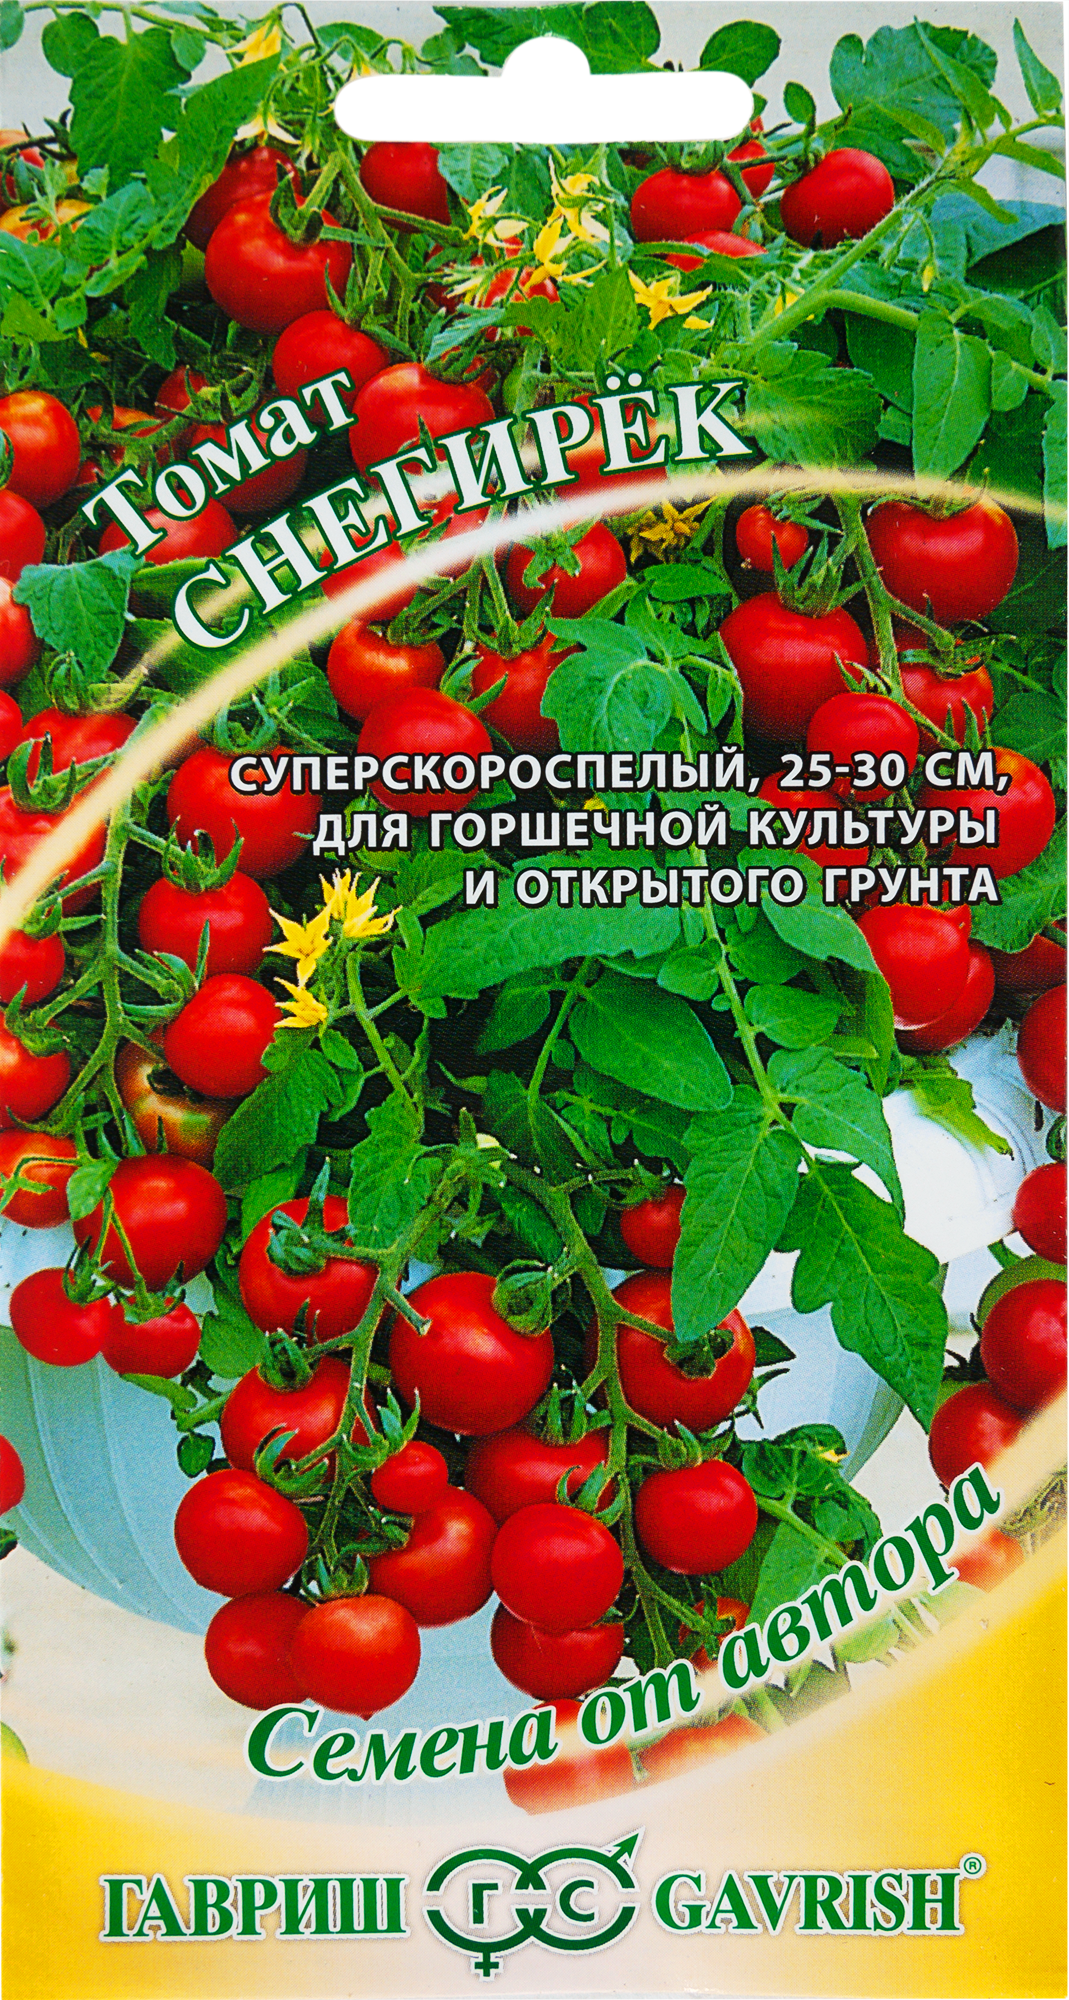 Семена Томат авторский «Снегирёк», 0.1 г в Москве – купить по низкой цене винтернет-магазине Леруа Мерлен